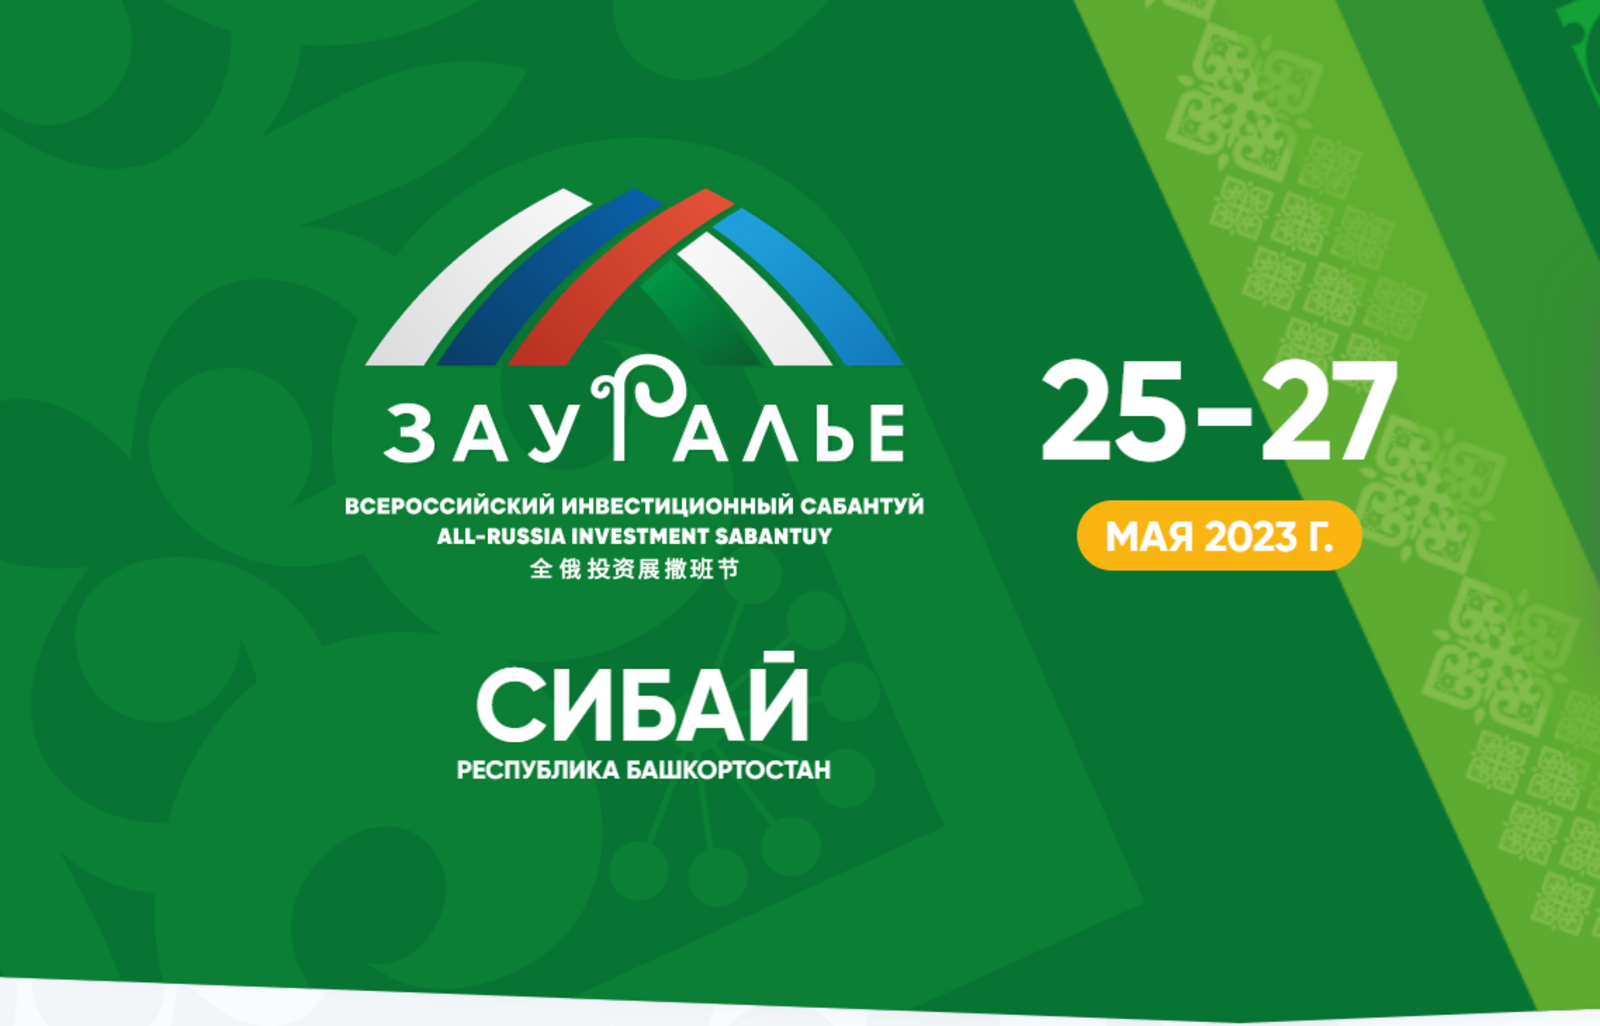 Всего через 6 дней в Сибае стартует Всероссийский инвестиционный сабантуй «Зауралье»!